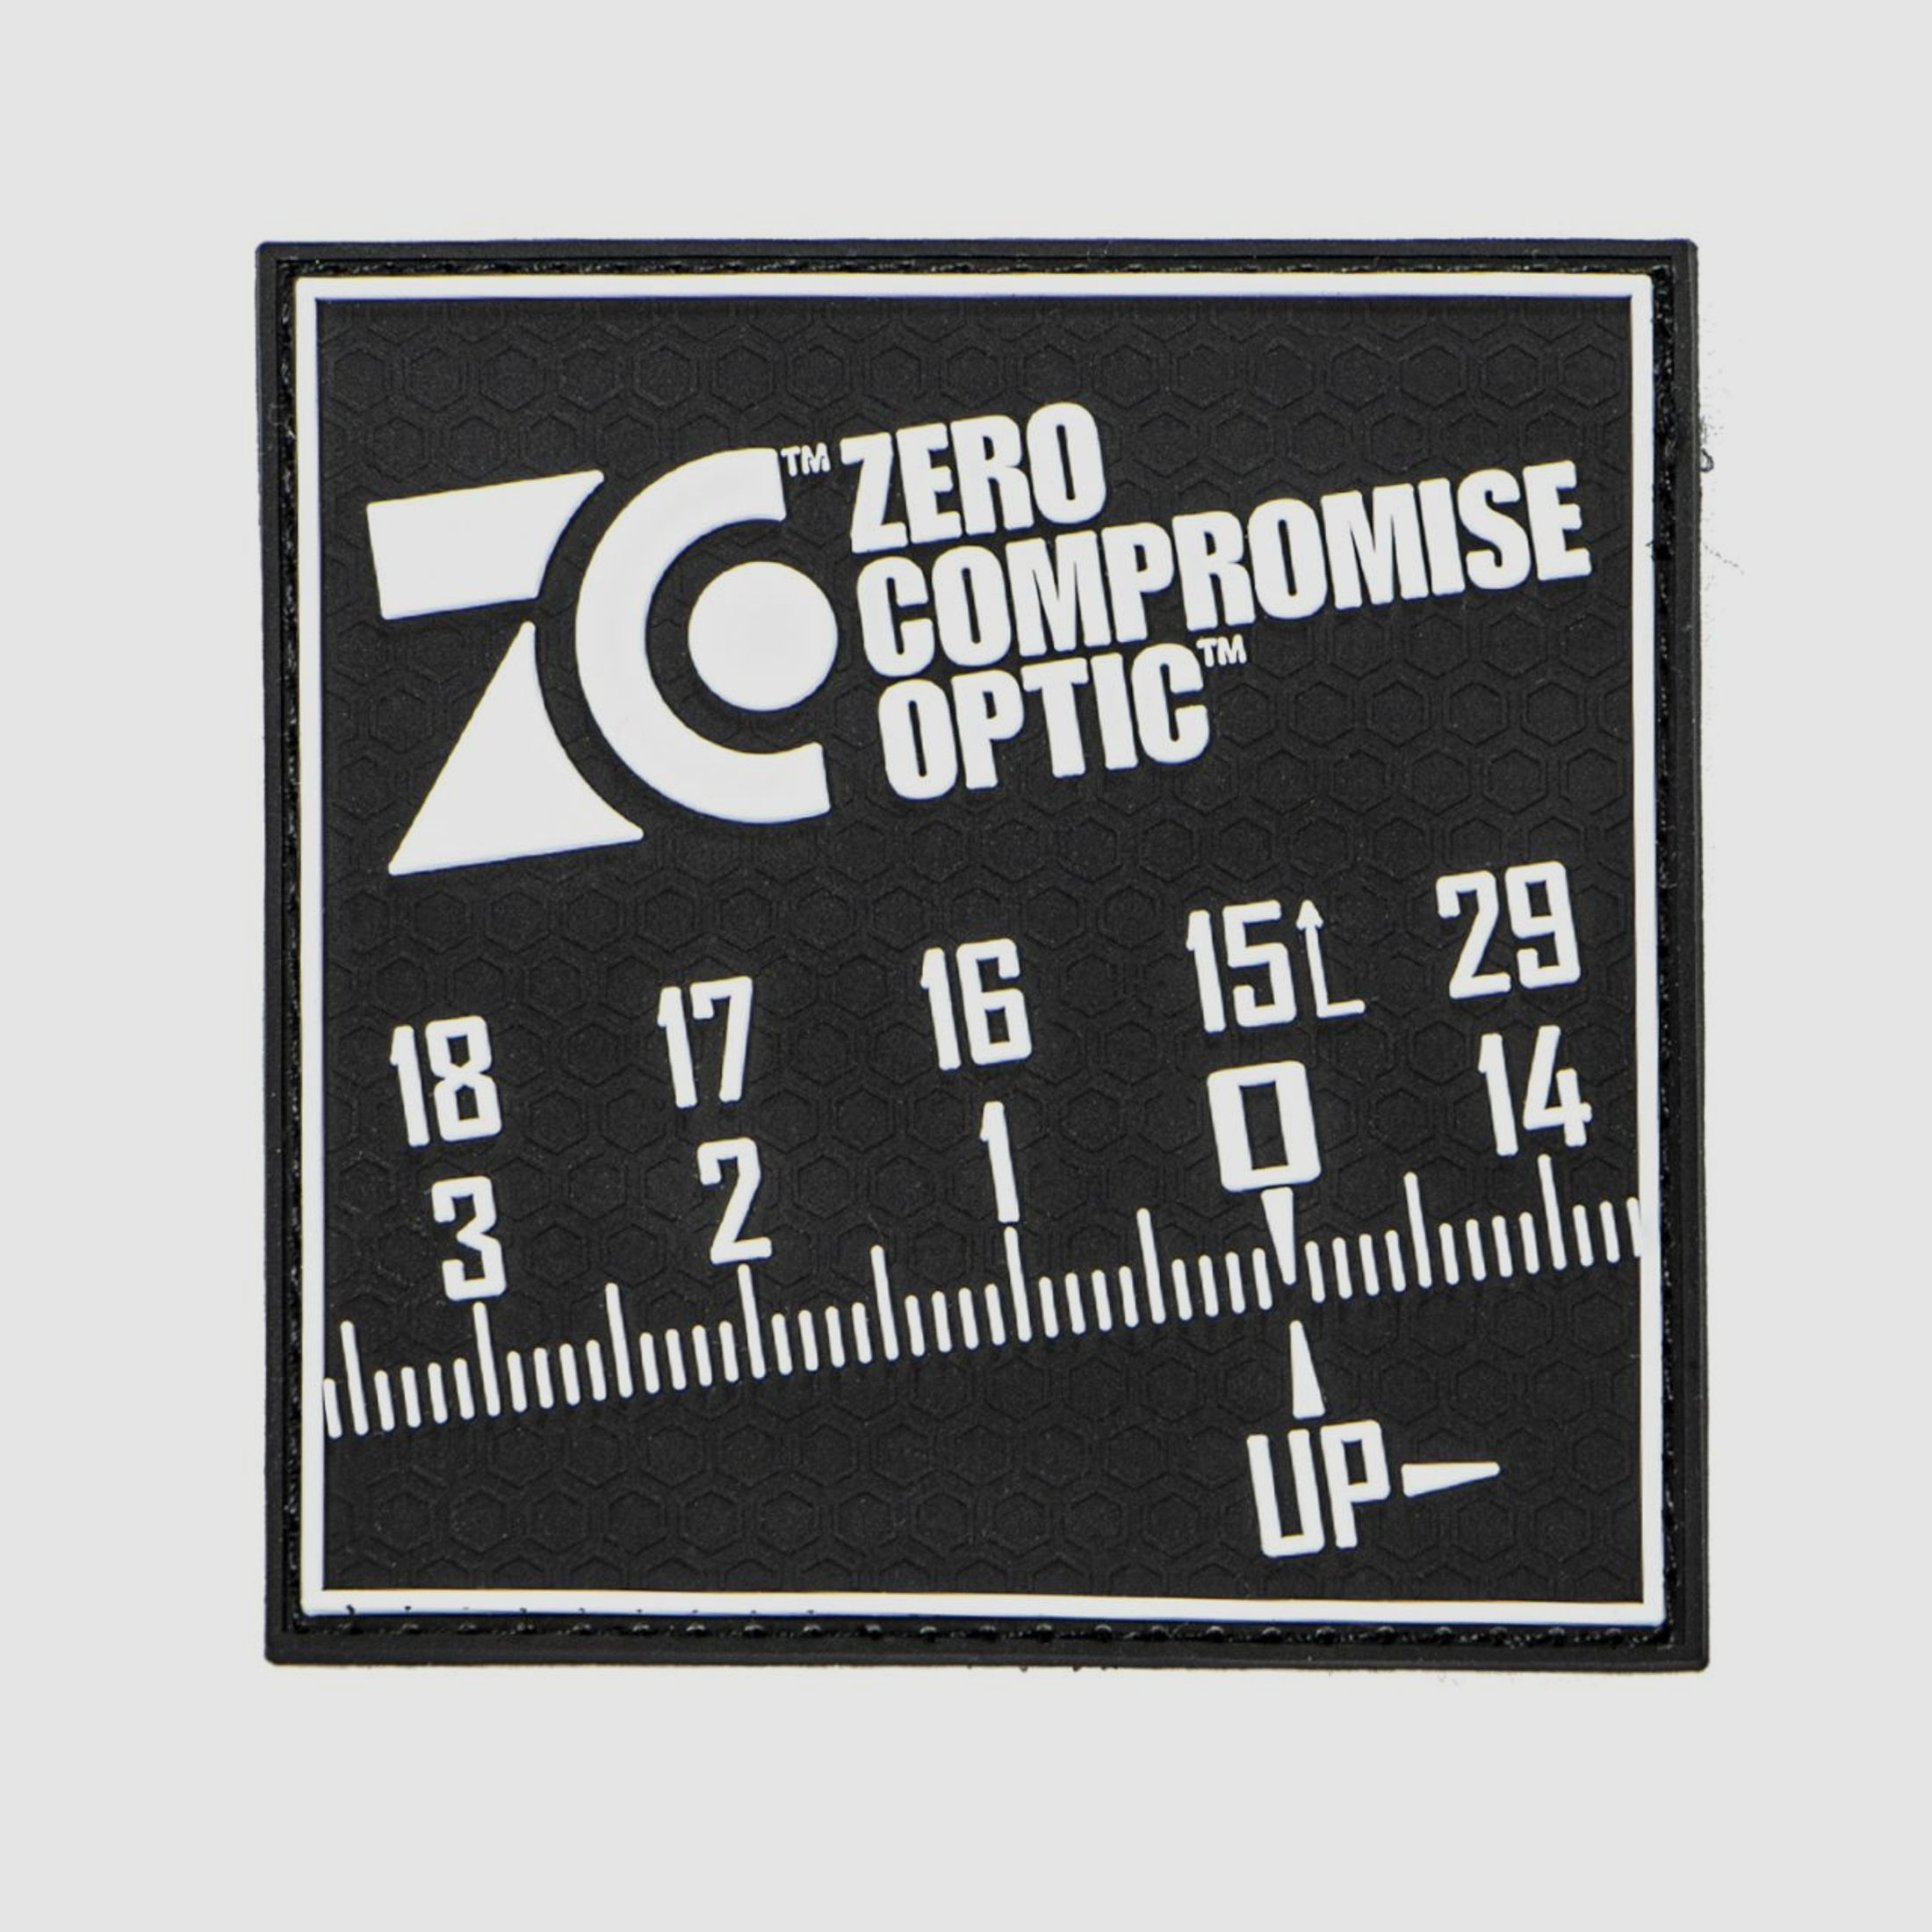 ZCO Zero Compromise Optics rubber velcro patch